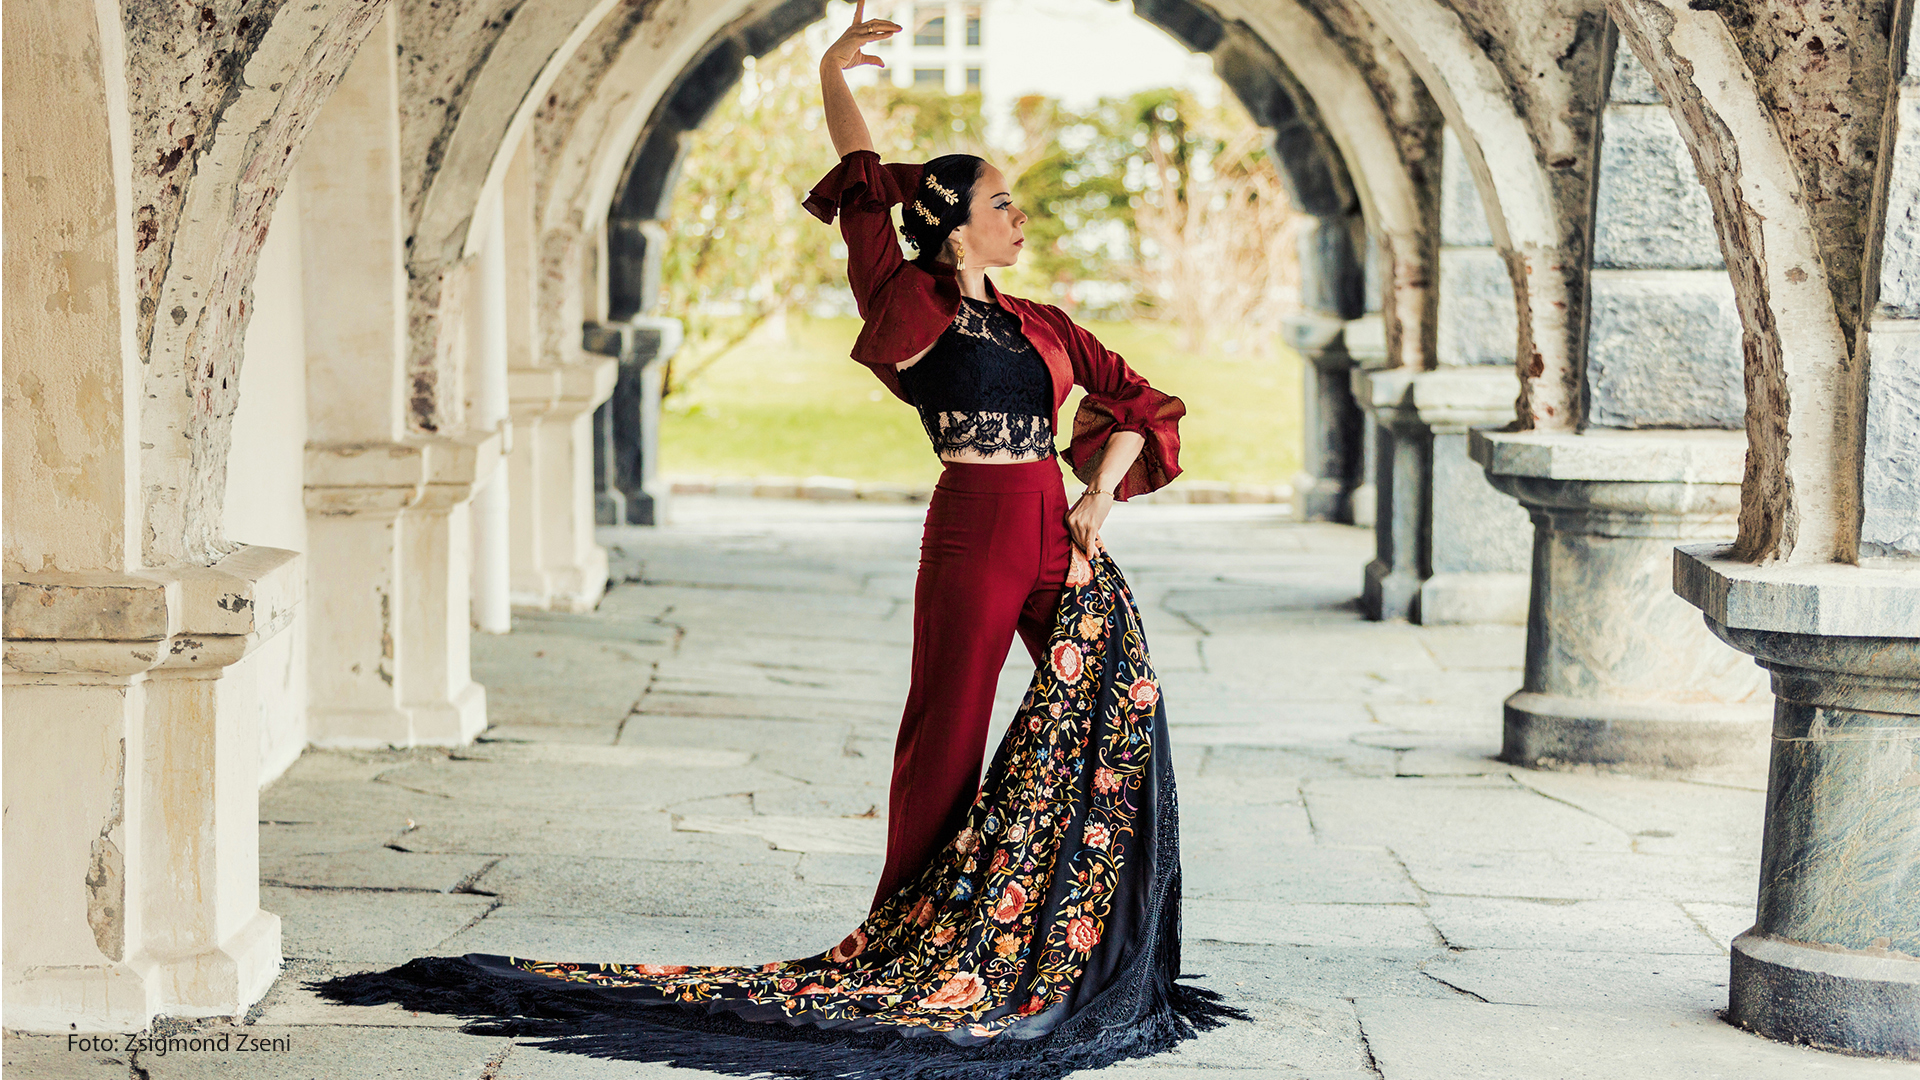 NANA -kjærleikssoger gjennom flamencodans, song og spansk gitarmusikk